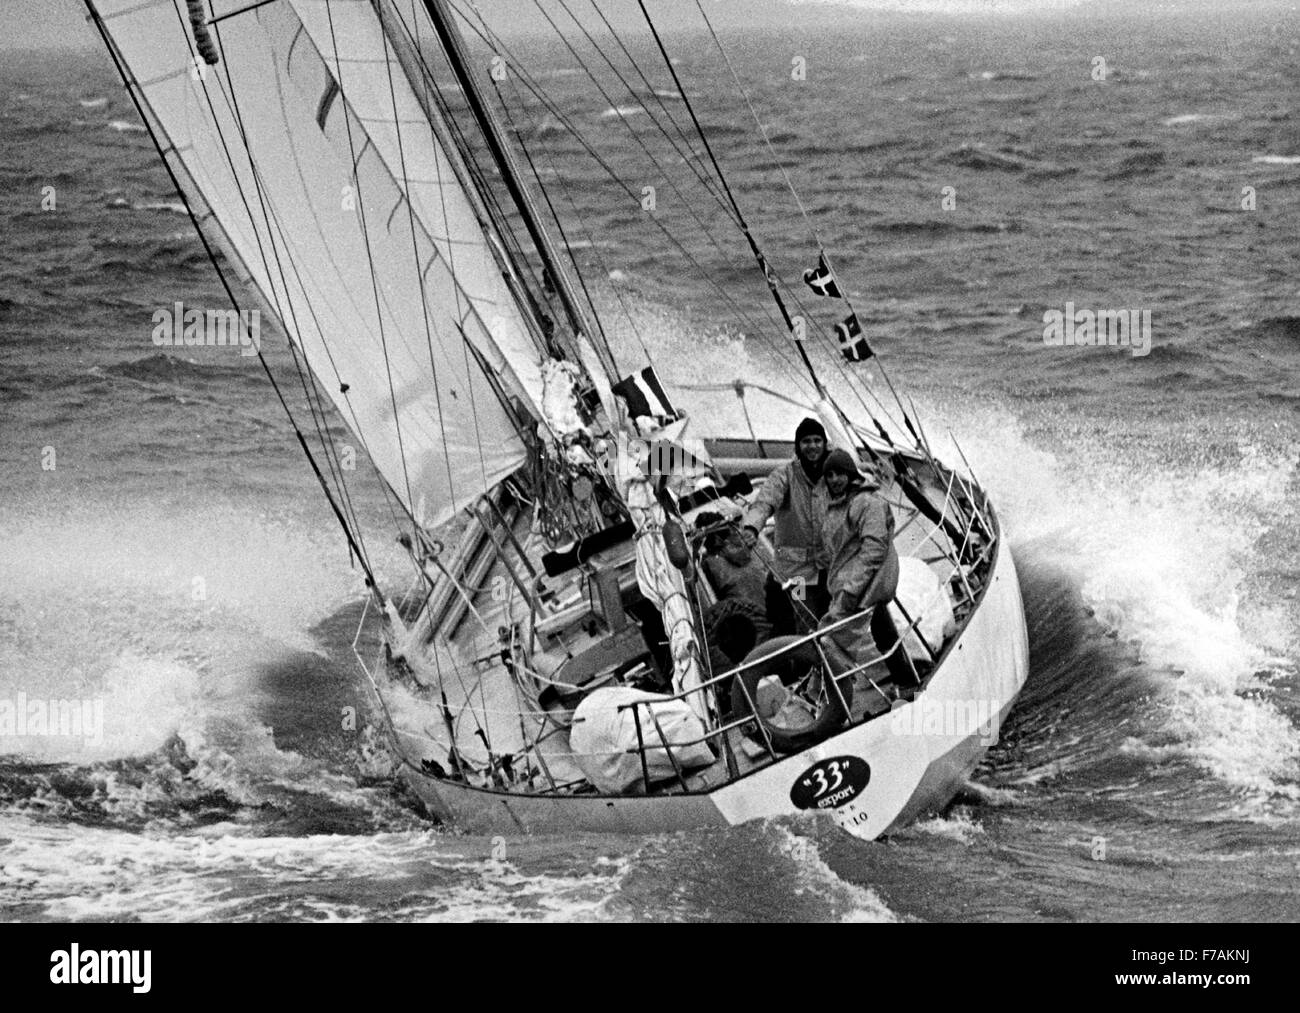 AJAXNETPHOTO. 1974. PORTSMOUTH, Inglaterra. - WHITBREAD Race 1973/1974 - 33 exportación (FRA) se aproxima a la línea de meta en Portsmouth - Miembro de la tripulación, Dominique GUILLET se perdió por la borda durante el segundo tramo de la carrera, cuando fue tomada esta foto la tripulación había quedado FUERA DEL AGUA Y SE CORTA EN LOS ALIMENTOS Foto : JONATHAN EASTLAND/AJAX REF:WRWR 74 Foto de stock